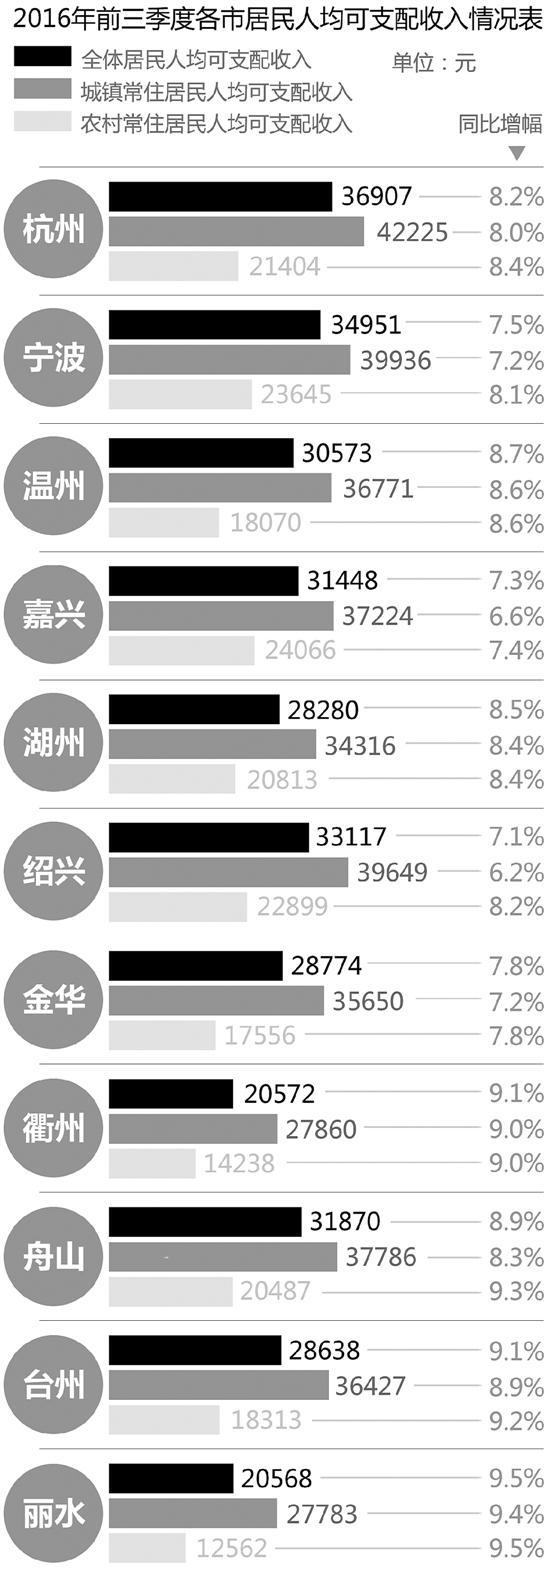 2017年浙江发展报告发布 人均收入排全国第三